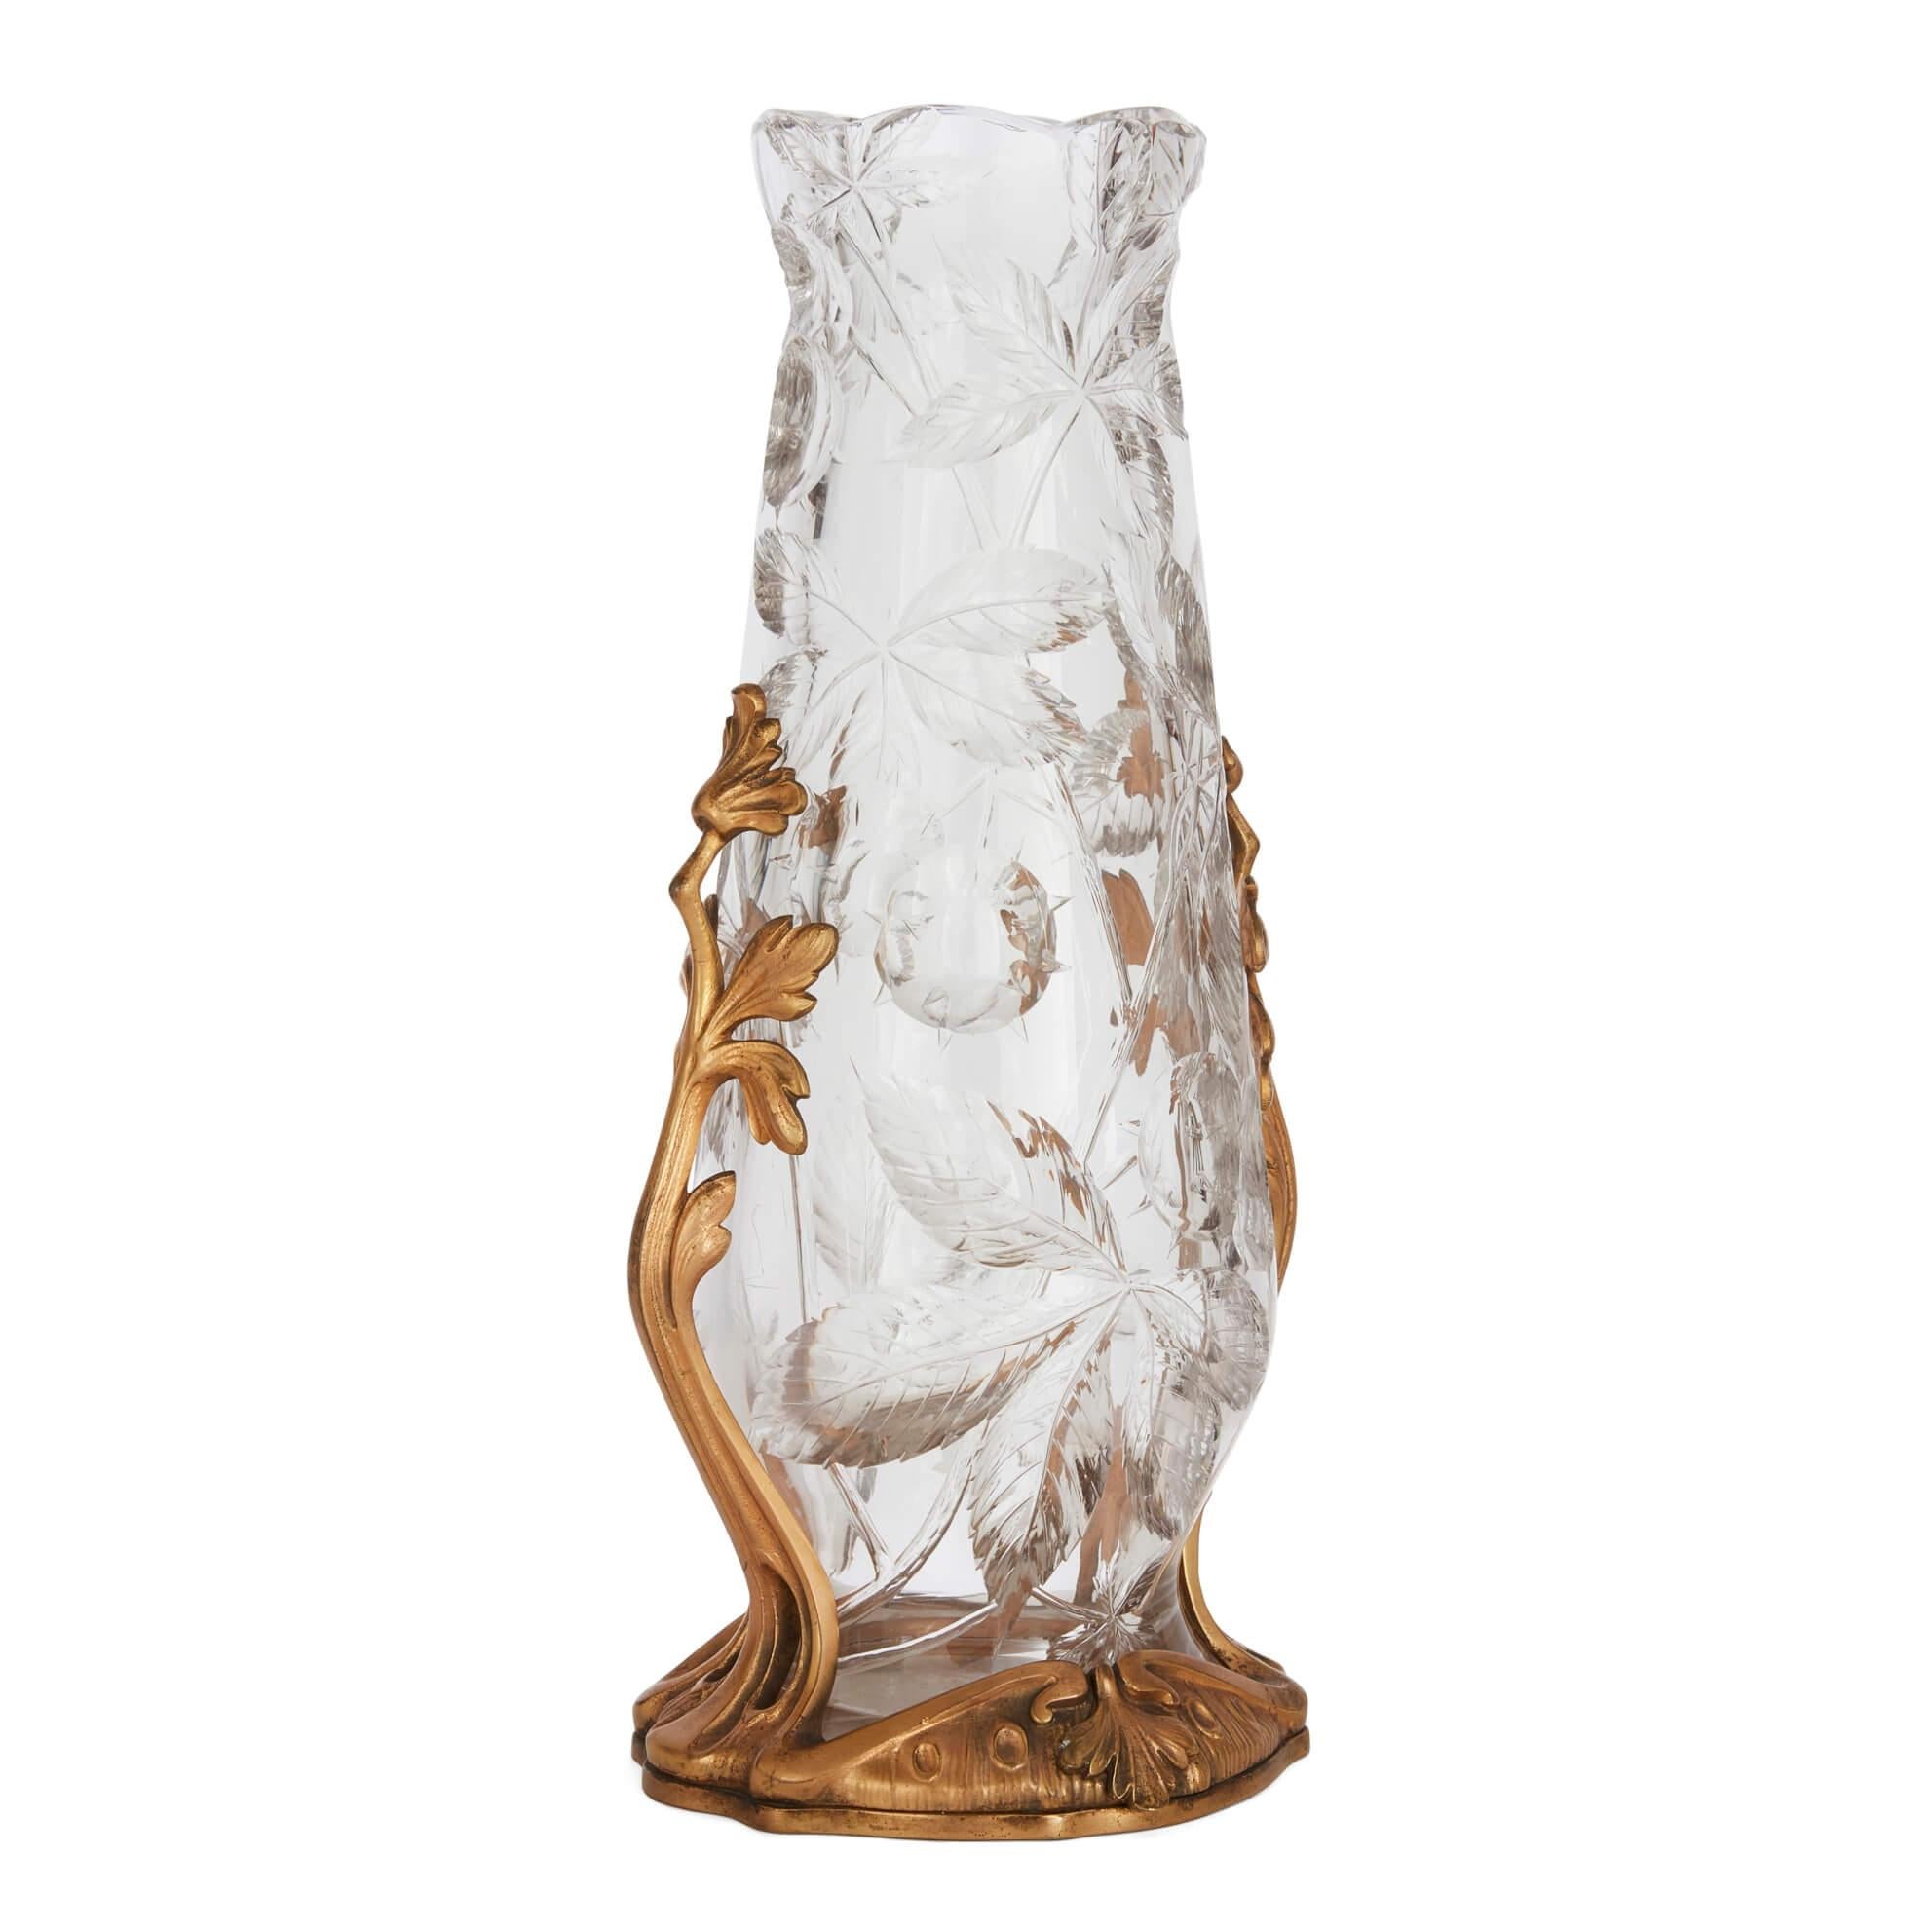 Vase Art Nouveau en cristal de Baccarat avec base en bronze doré
Français, c.C. 1905
Hauteur 32 cm, diamètre 14 cm

Ce superbe vase en verre de Baccarat est accompagné d'une intrigante base en bronze doré. Le vase en cristal a un corps arrondi qui